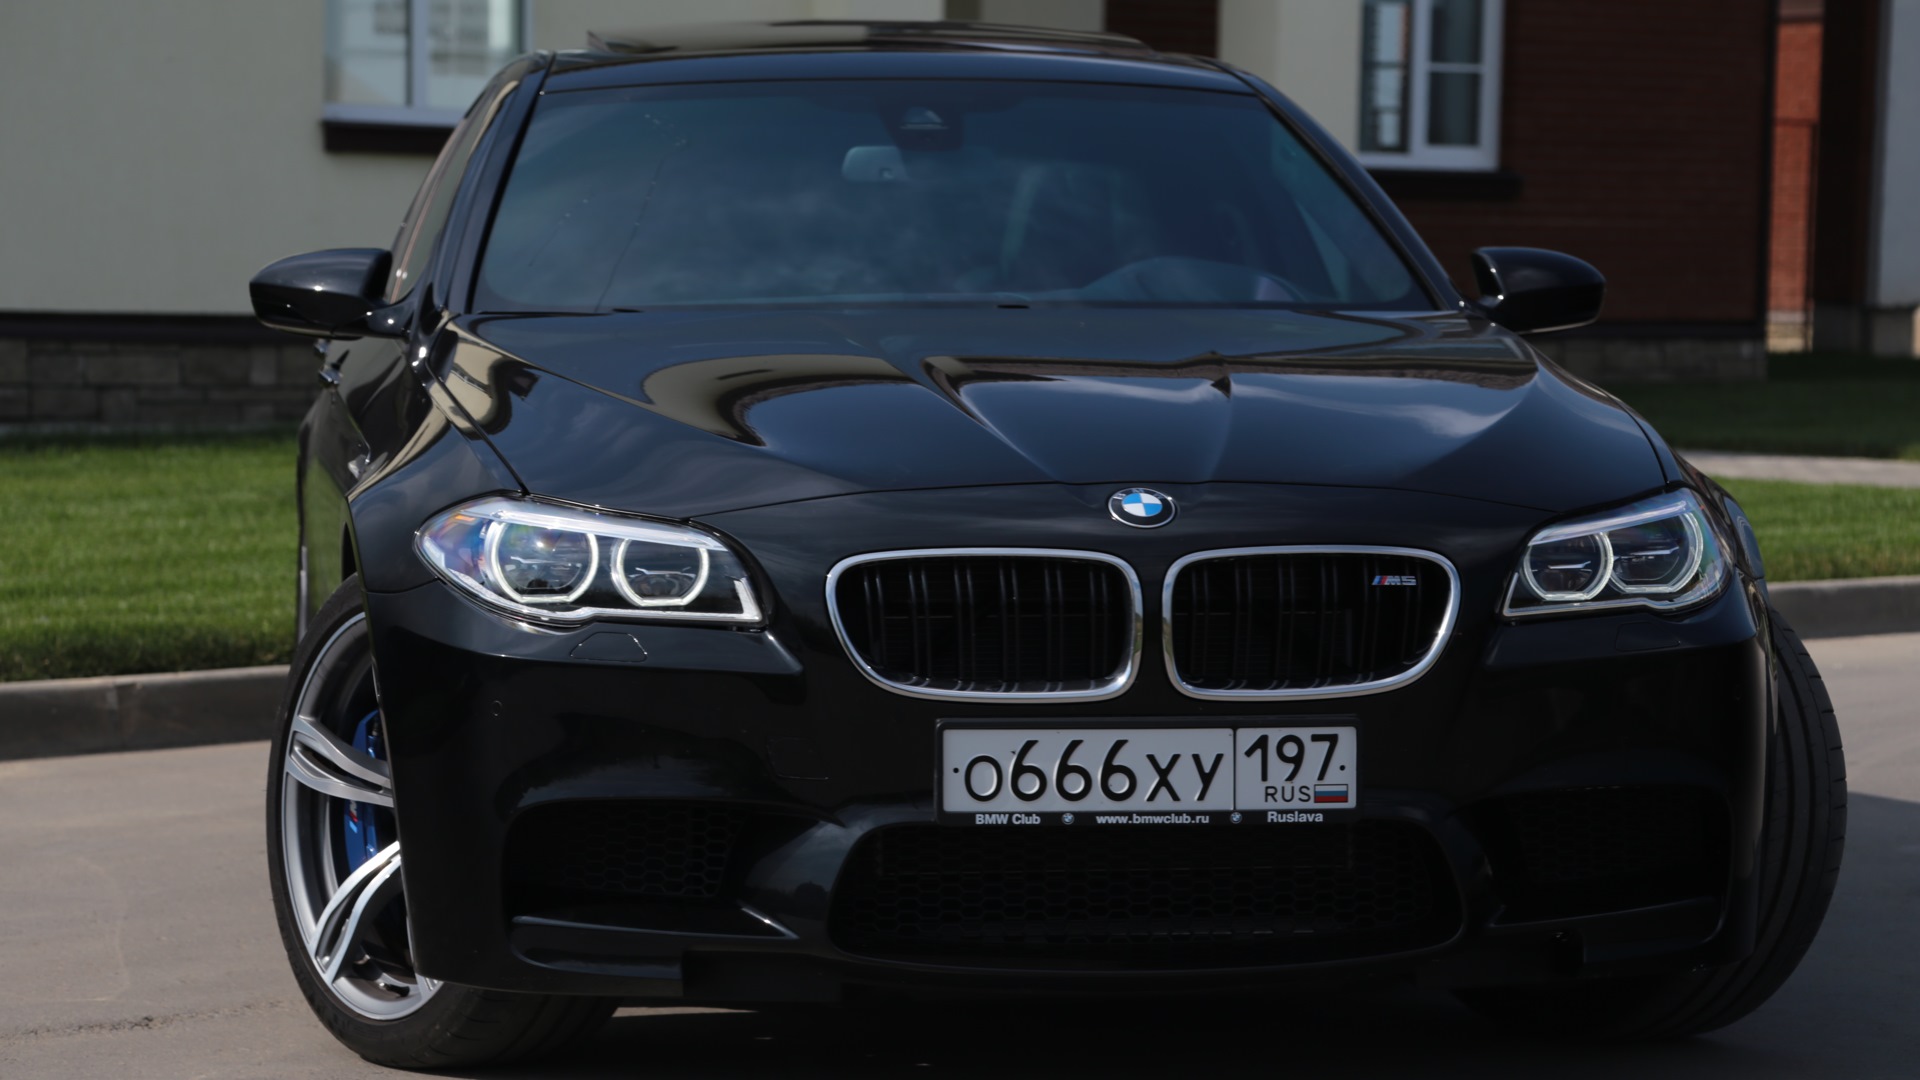 BMW m5 f10. BMW m5 f10 Black. BMW m5 f10 черная. БМВ м5 777. М5 на русский